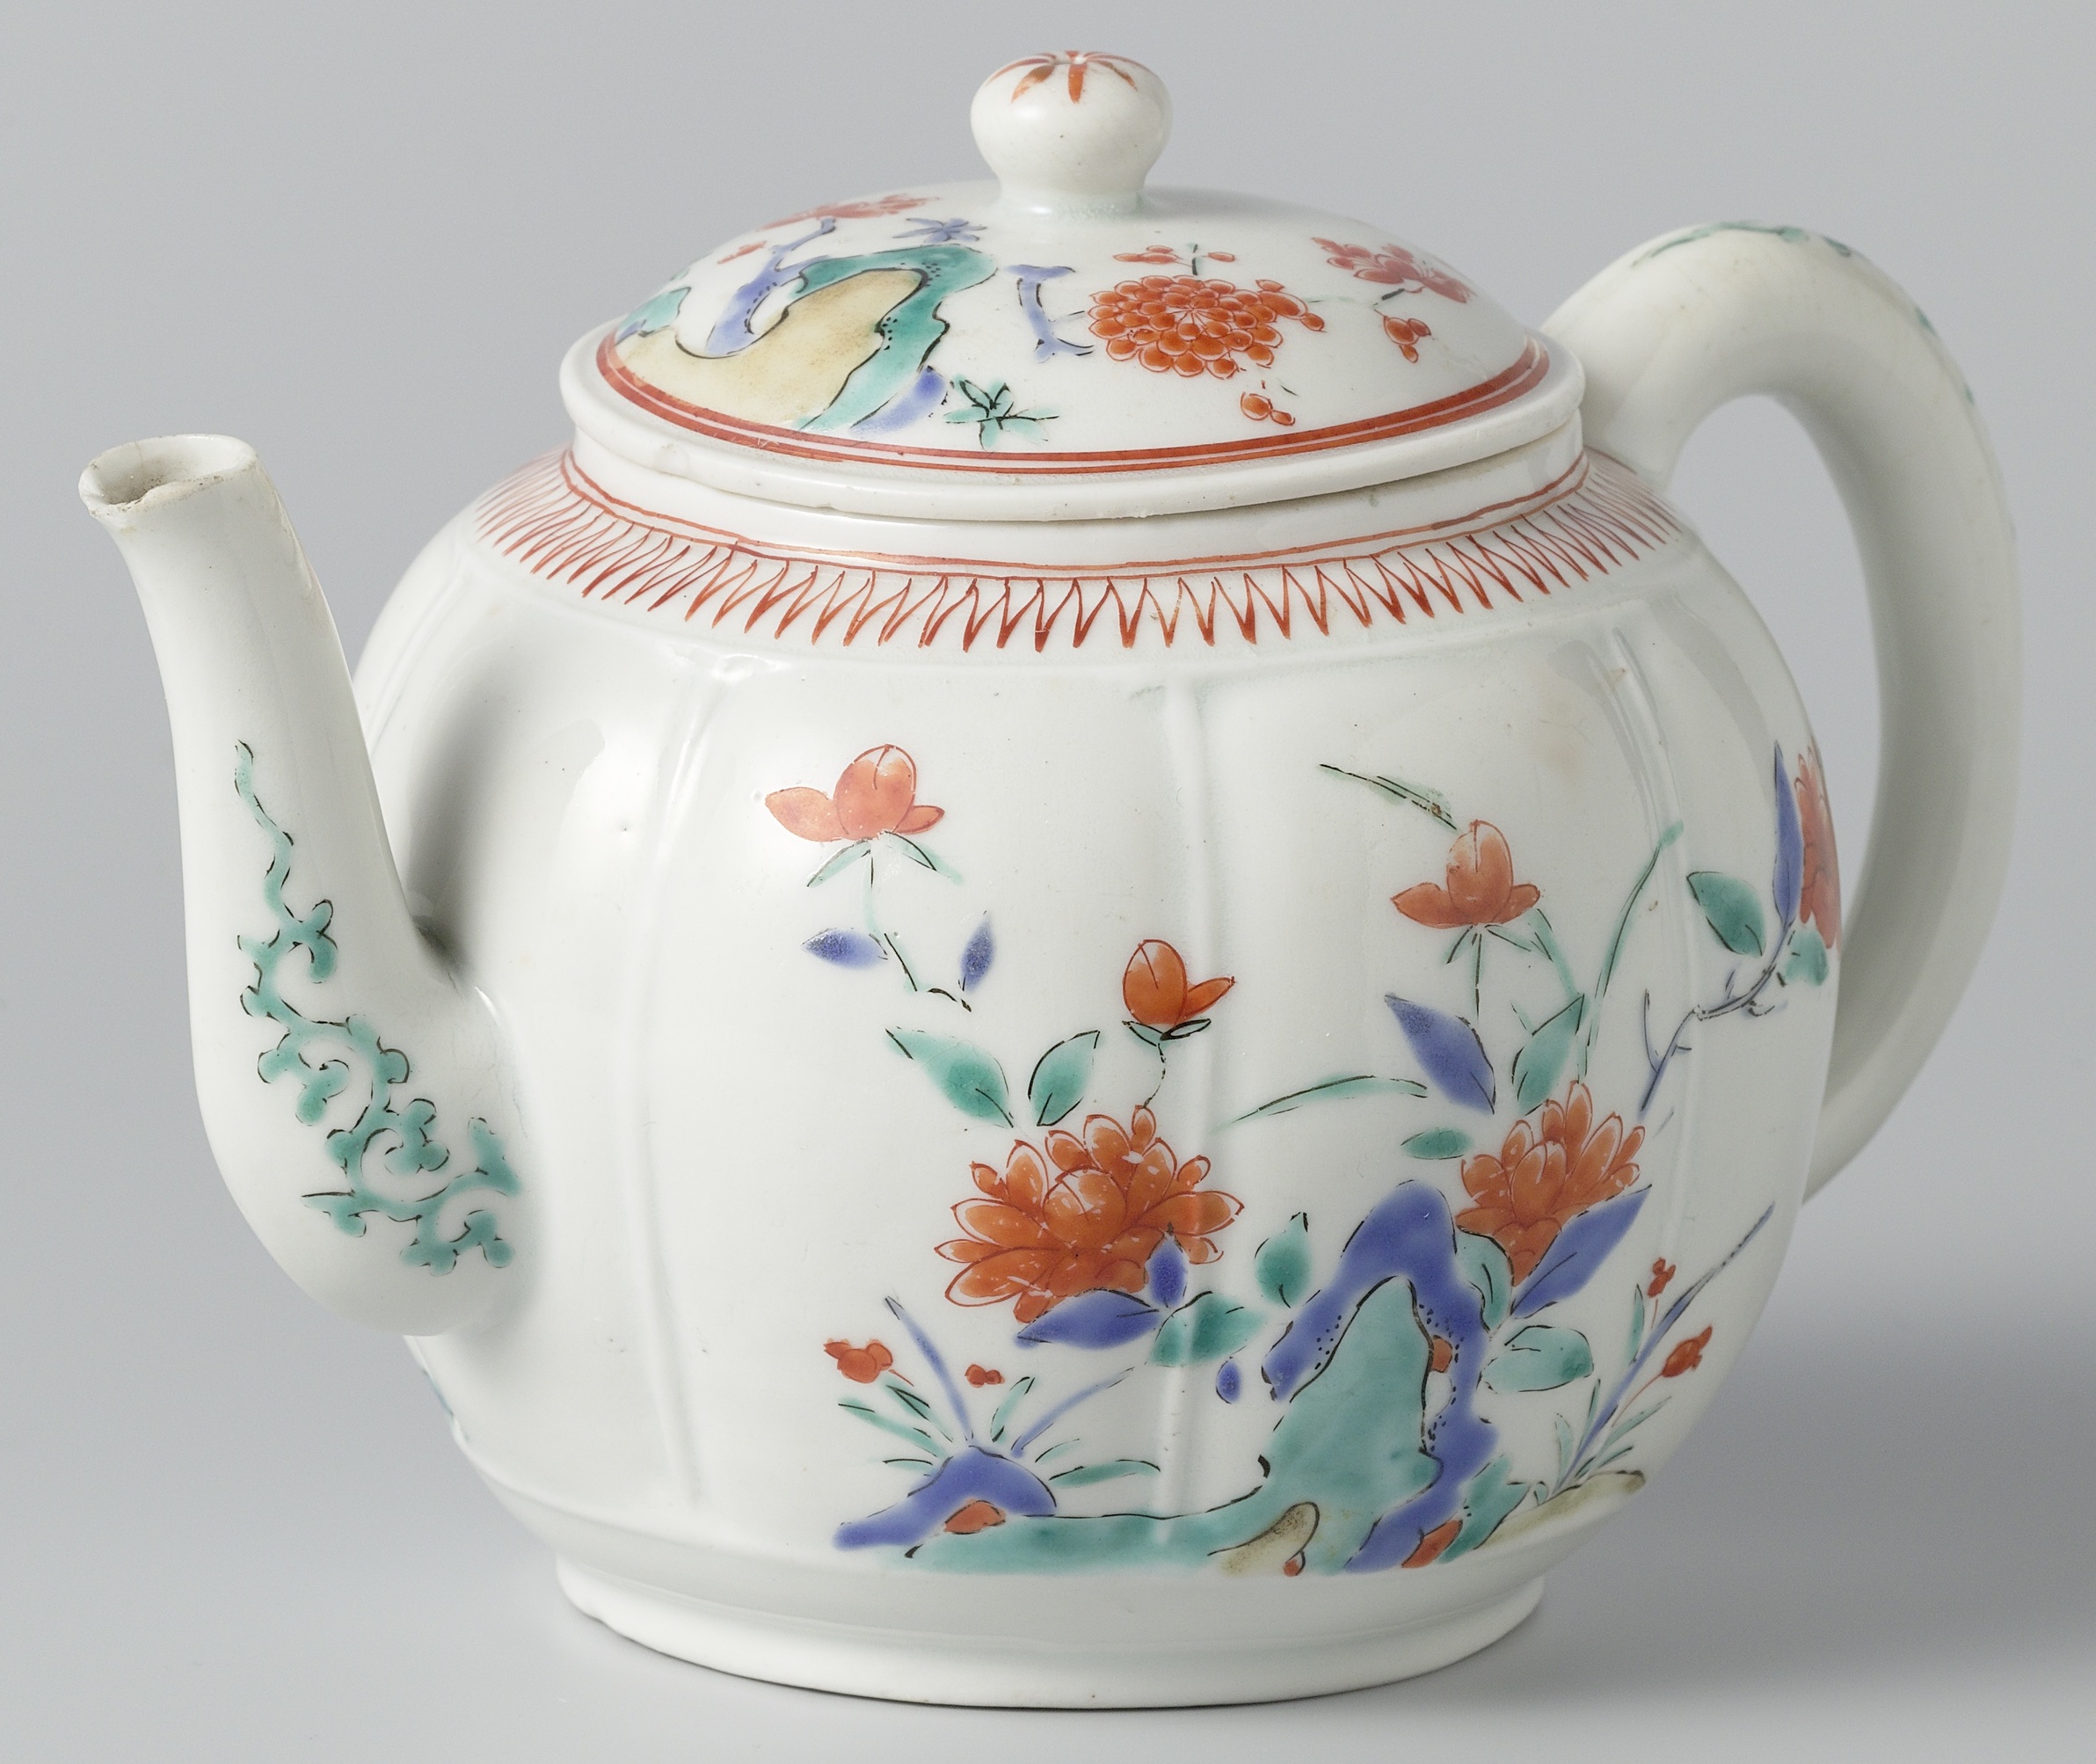 Japan porcelain mark vintage makers Pottery Marks